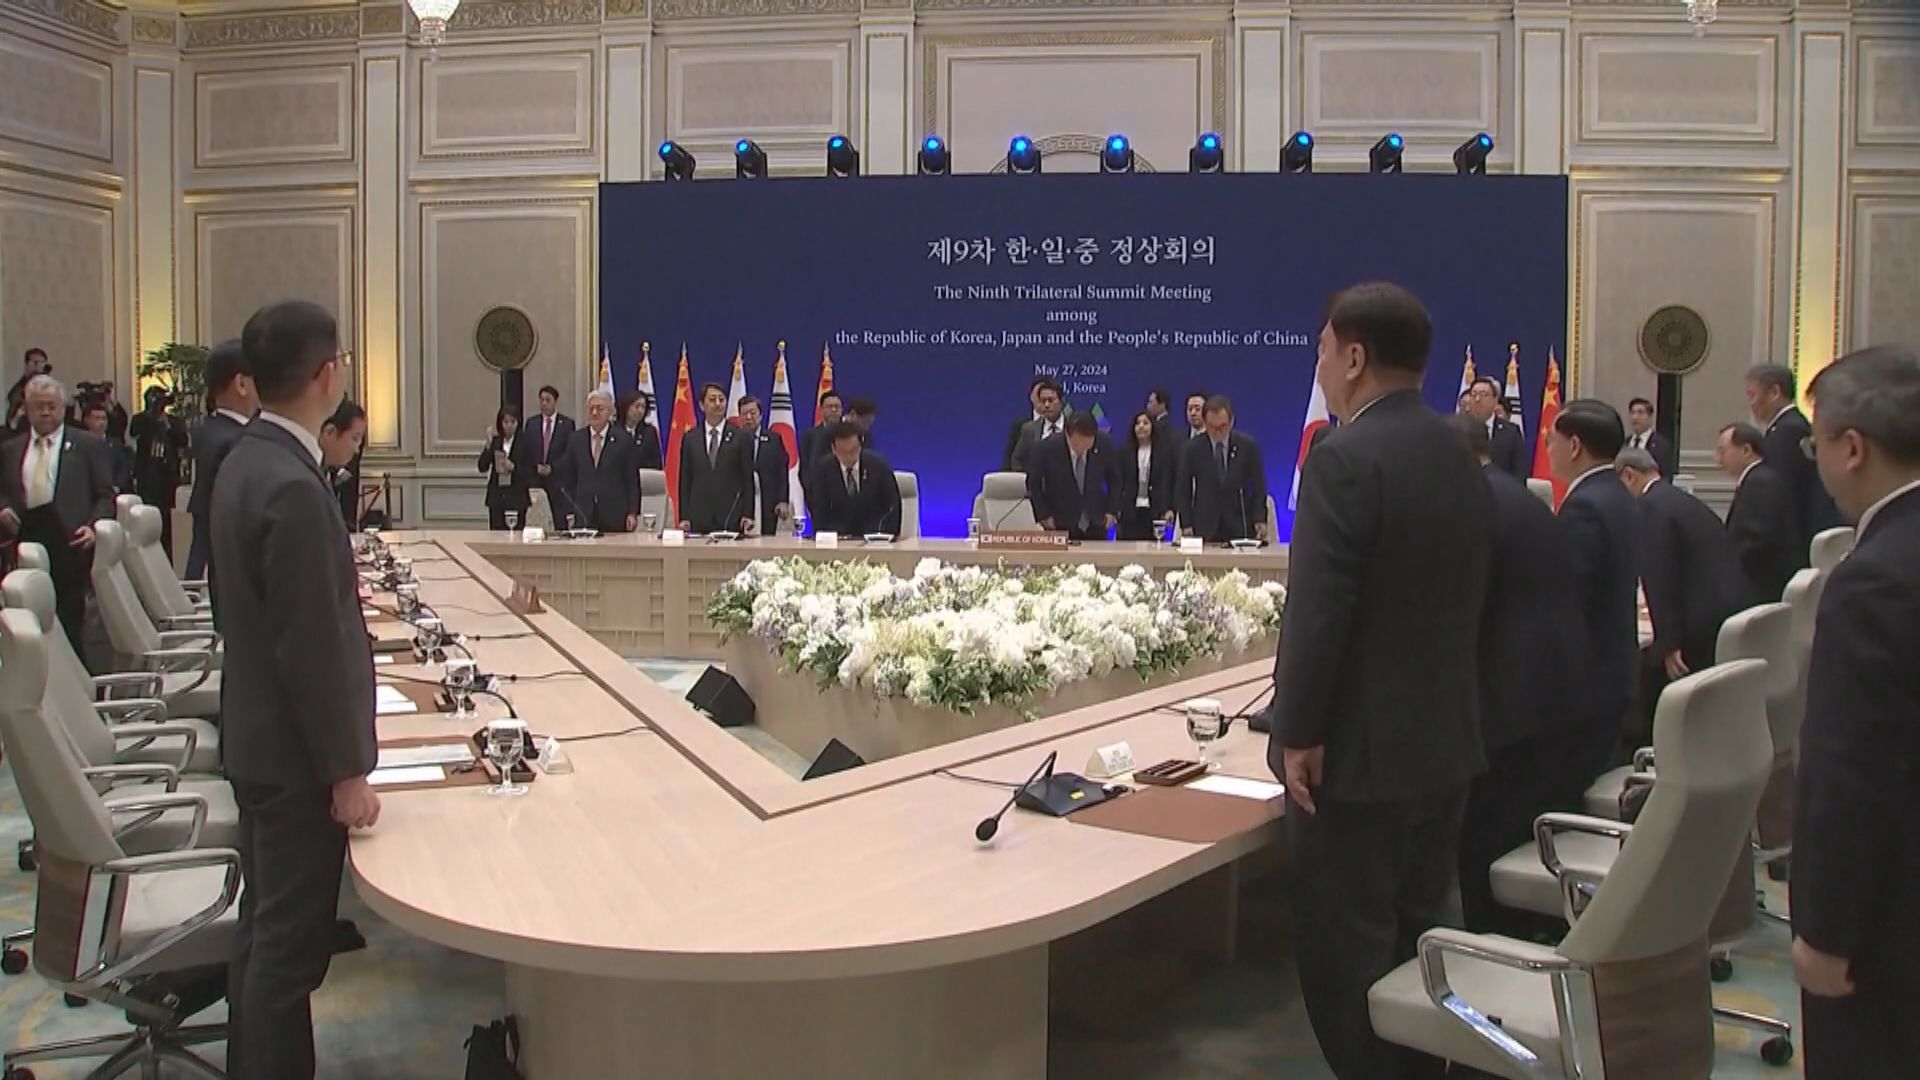 中日韓領導人會議在南韓首爾舉行 李強促三國透過坦誠對話化解誤解